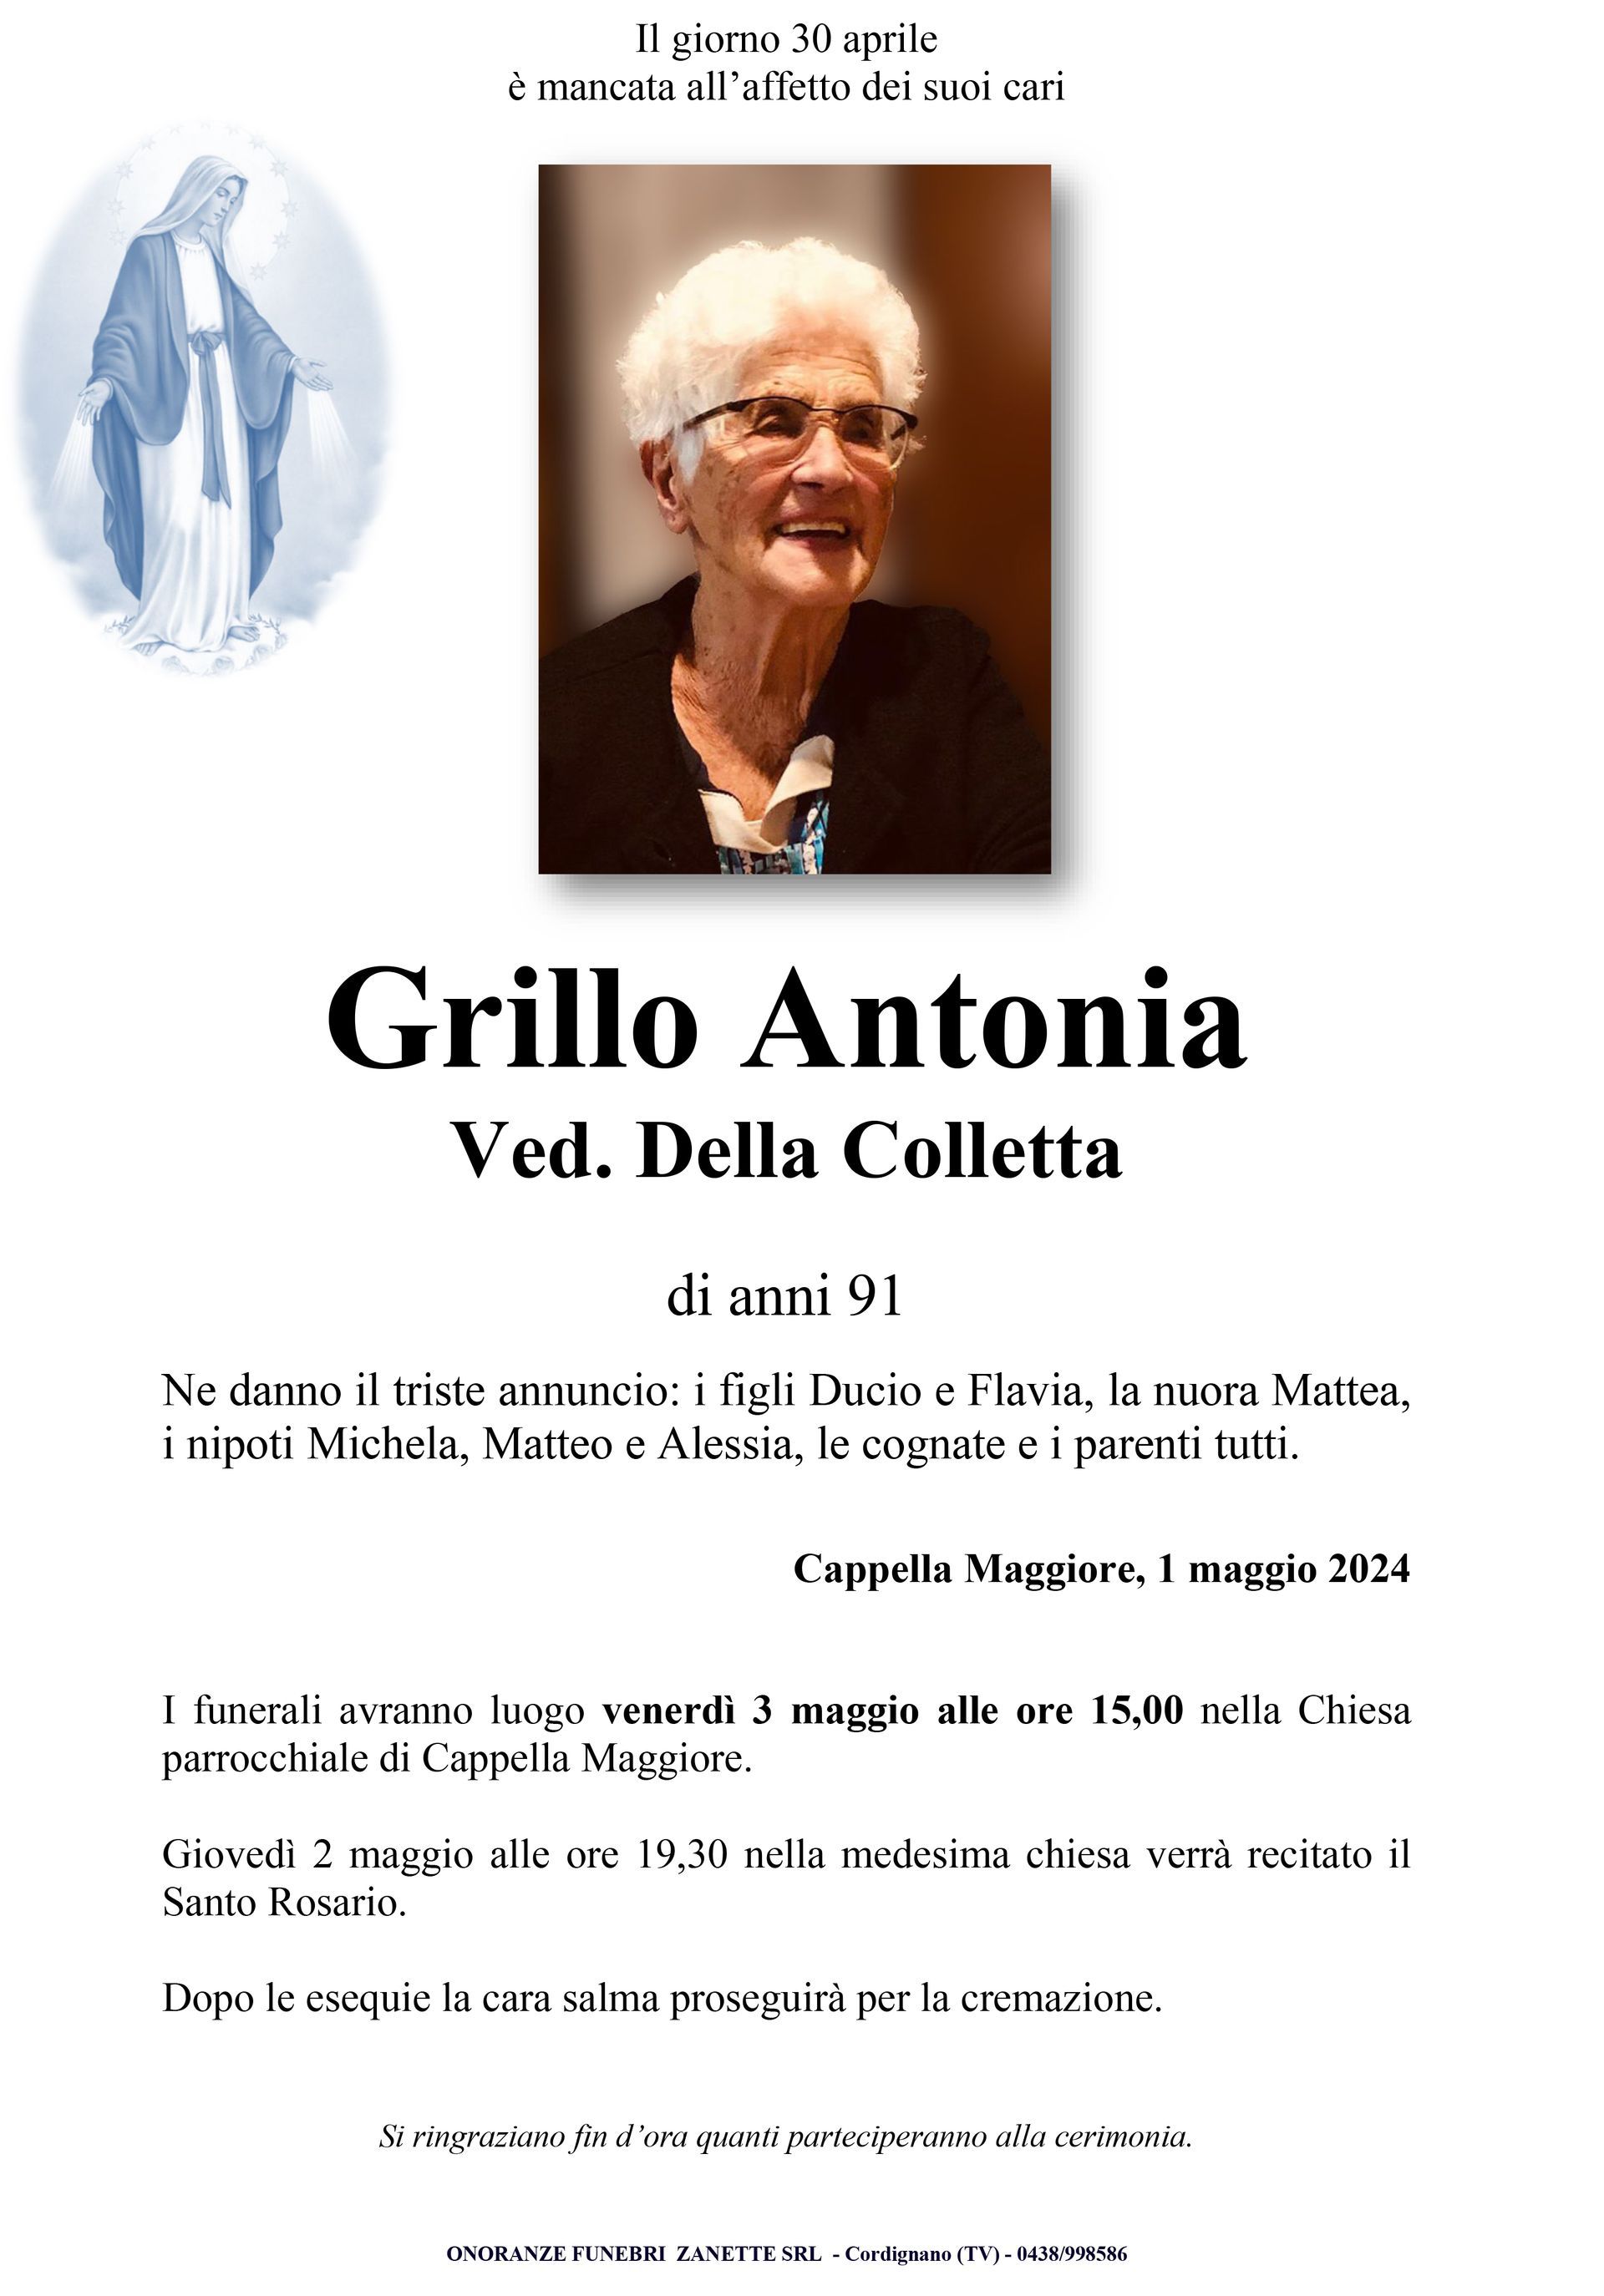 Grillo Antonia